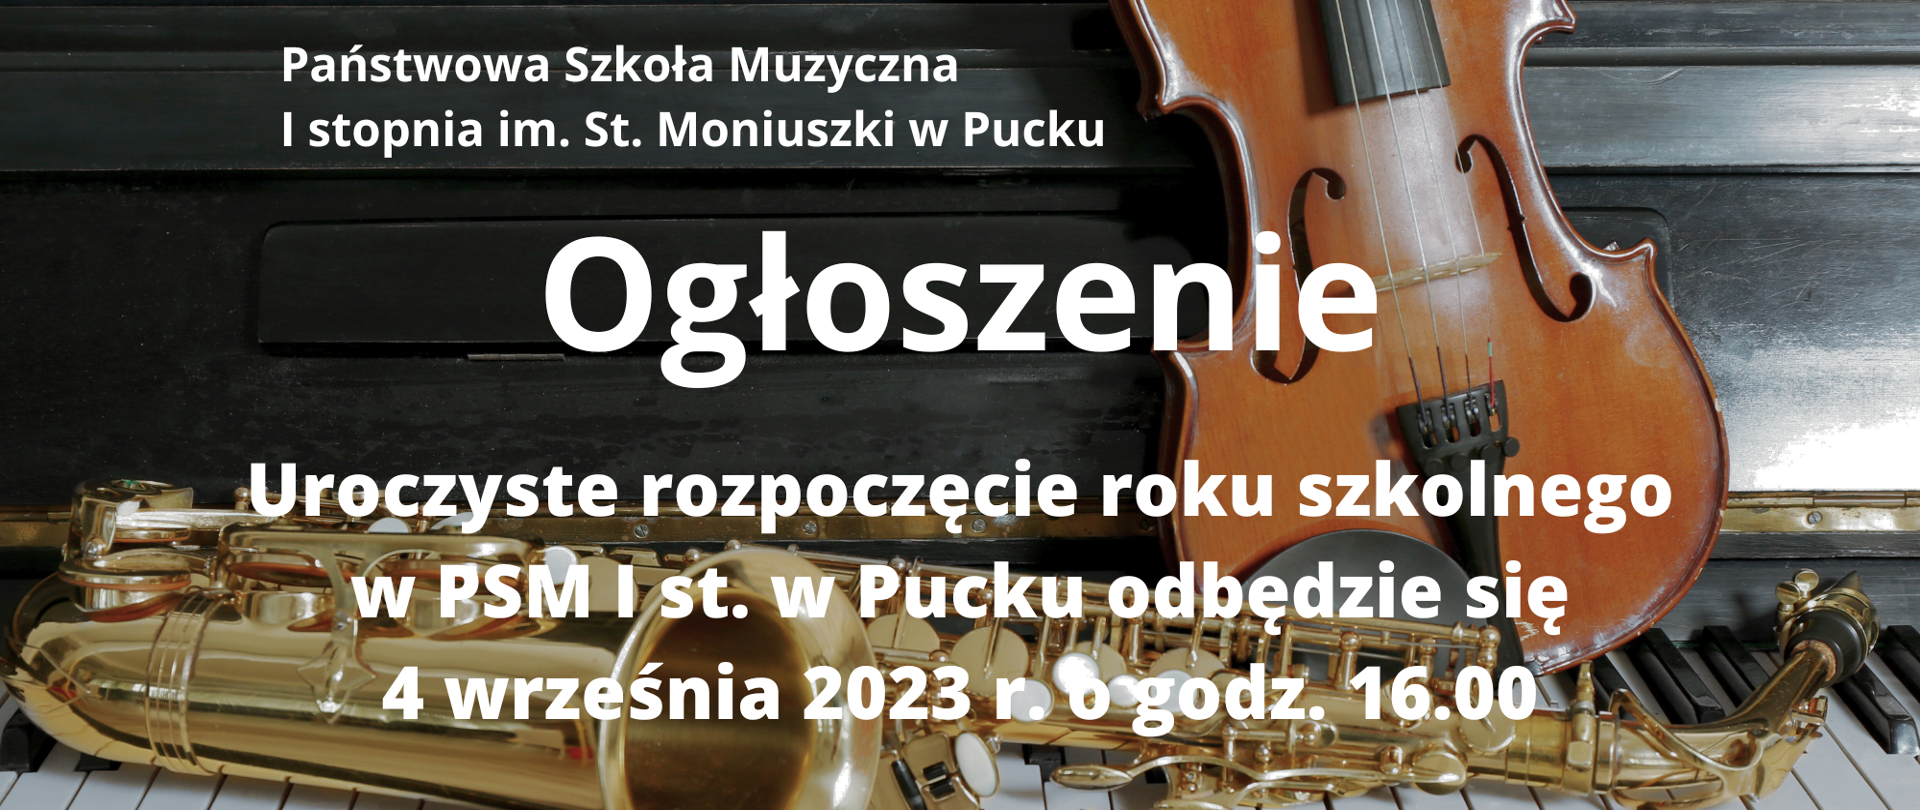 Plakat o treści Państwowa Szkoła Muzyczna I st. w Pucku, Ogłoszenie Uroczyste rozpoczęcie roku szkolnego 2023/2024 w PSM i st. w Pucku odbędzie się 4 września 2023 r. o godz. 16.00